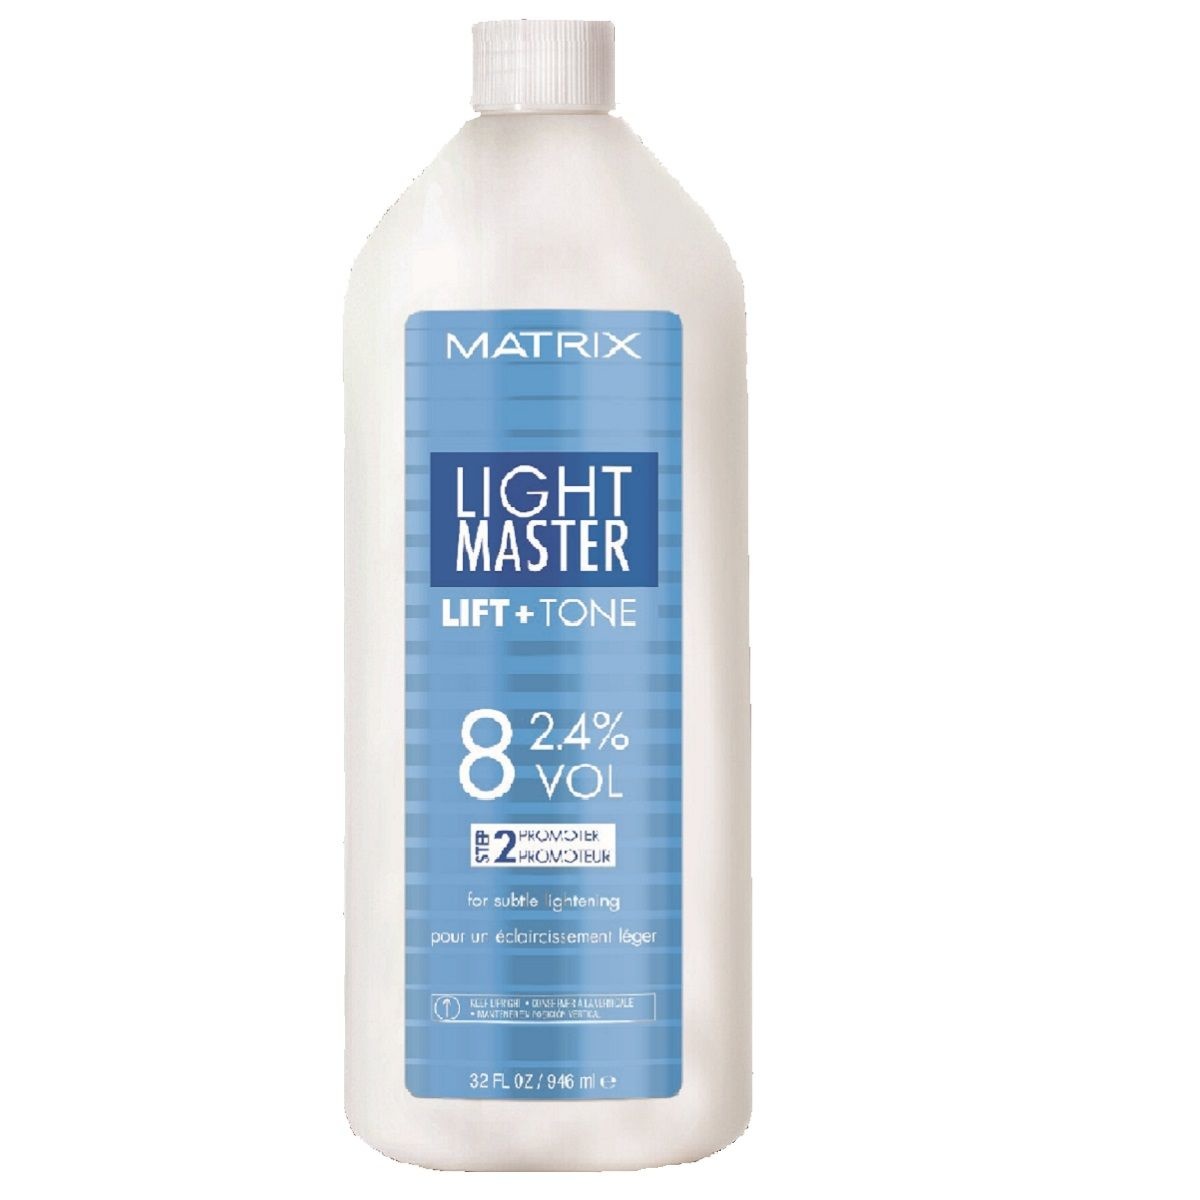 Matrix Light Master Lift & Tone Oxidant 8VOL (2,4%) 946ml